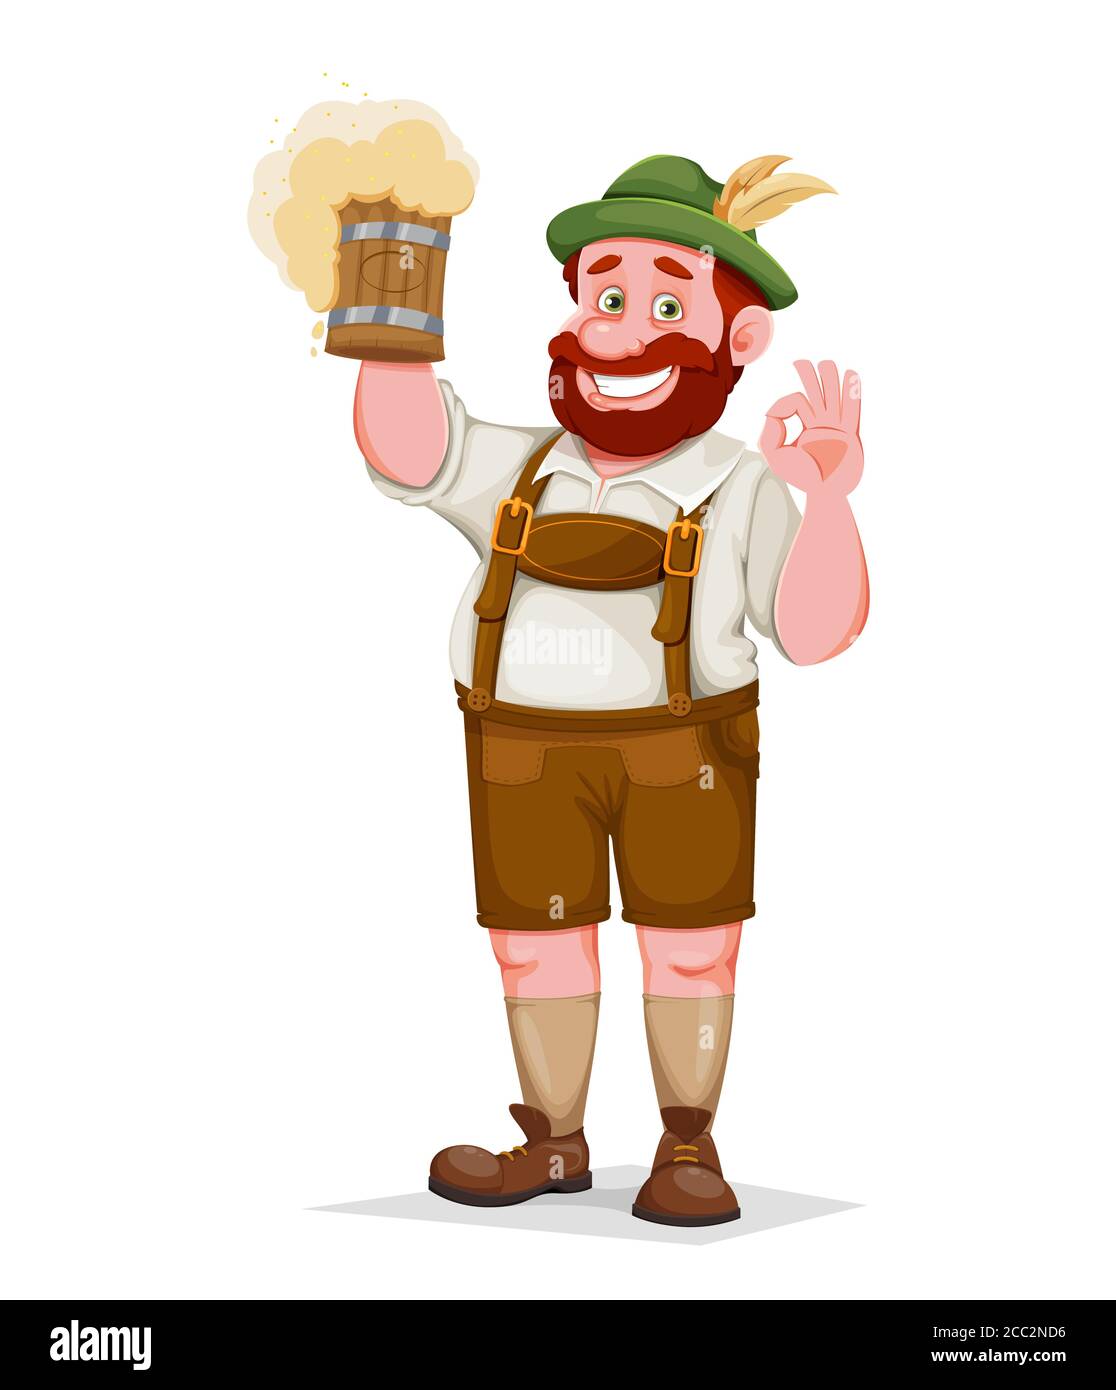 Mann in bayerischer Kleidung, lustige Zeichentrickfigur. Münchner Bierfest Oktoberfest. Vektorgrafik Stock Vektor